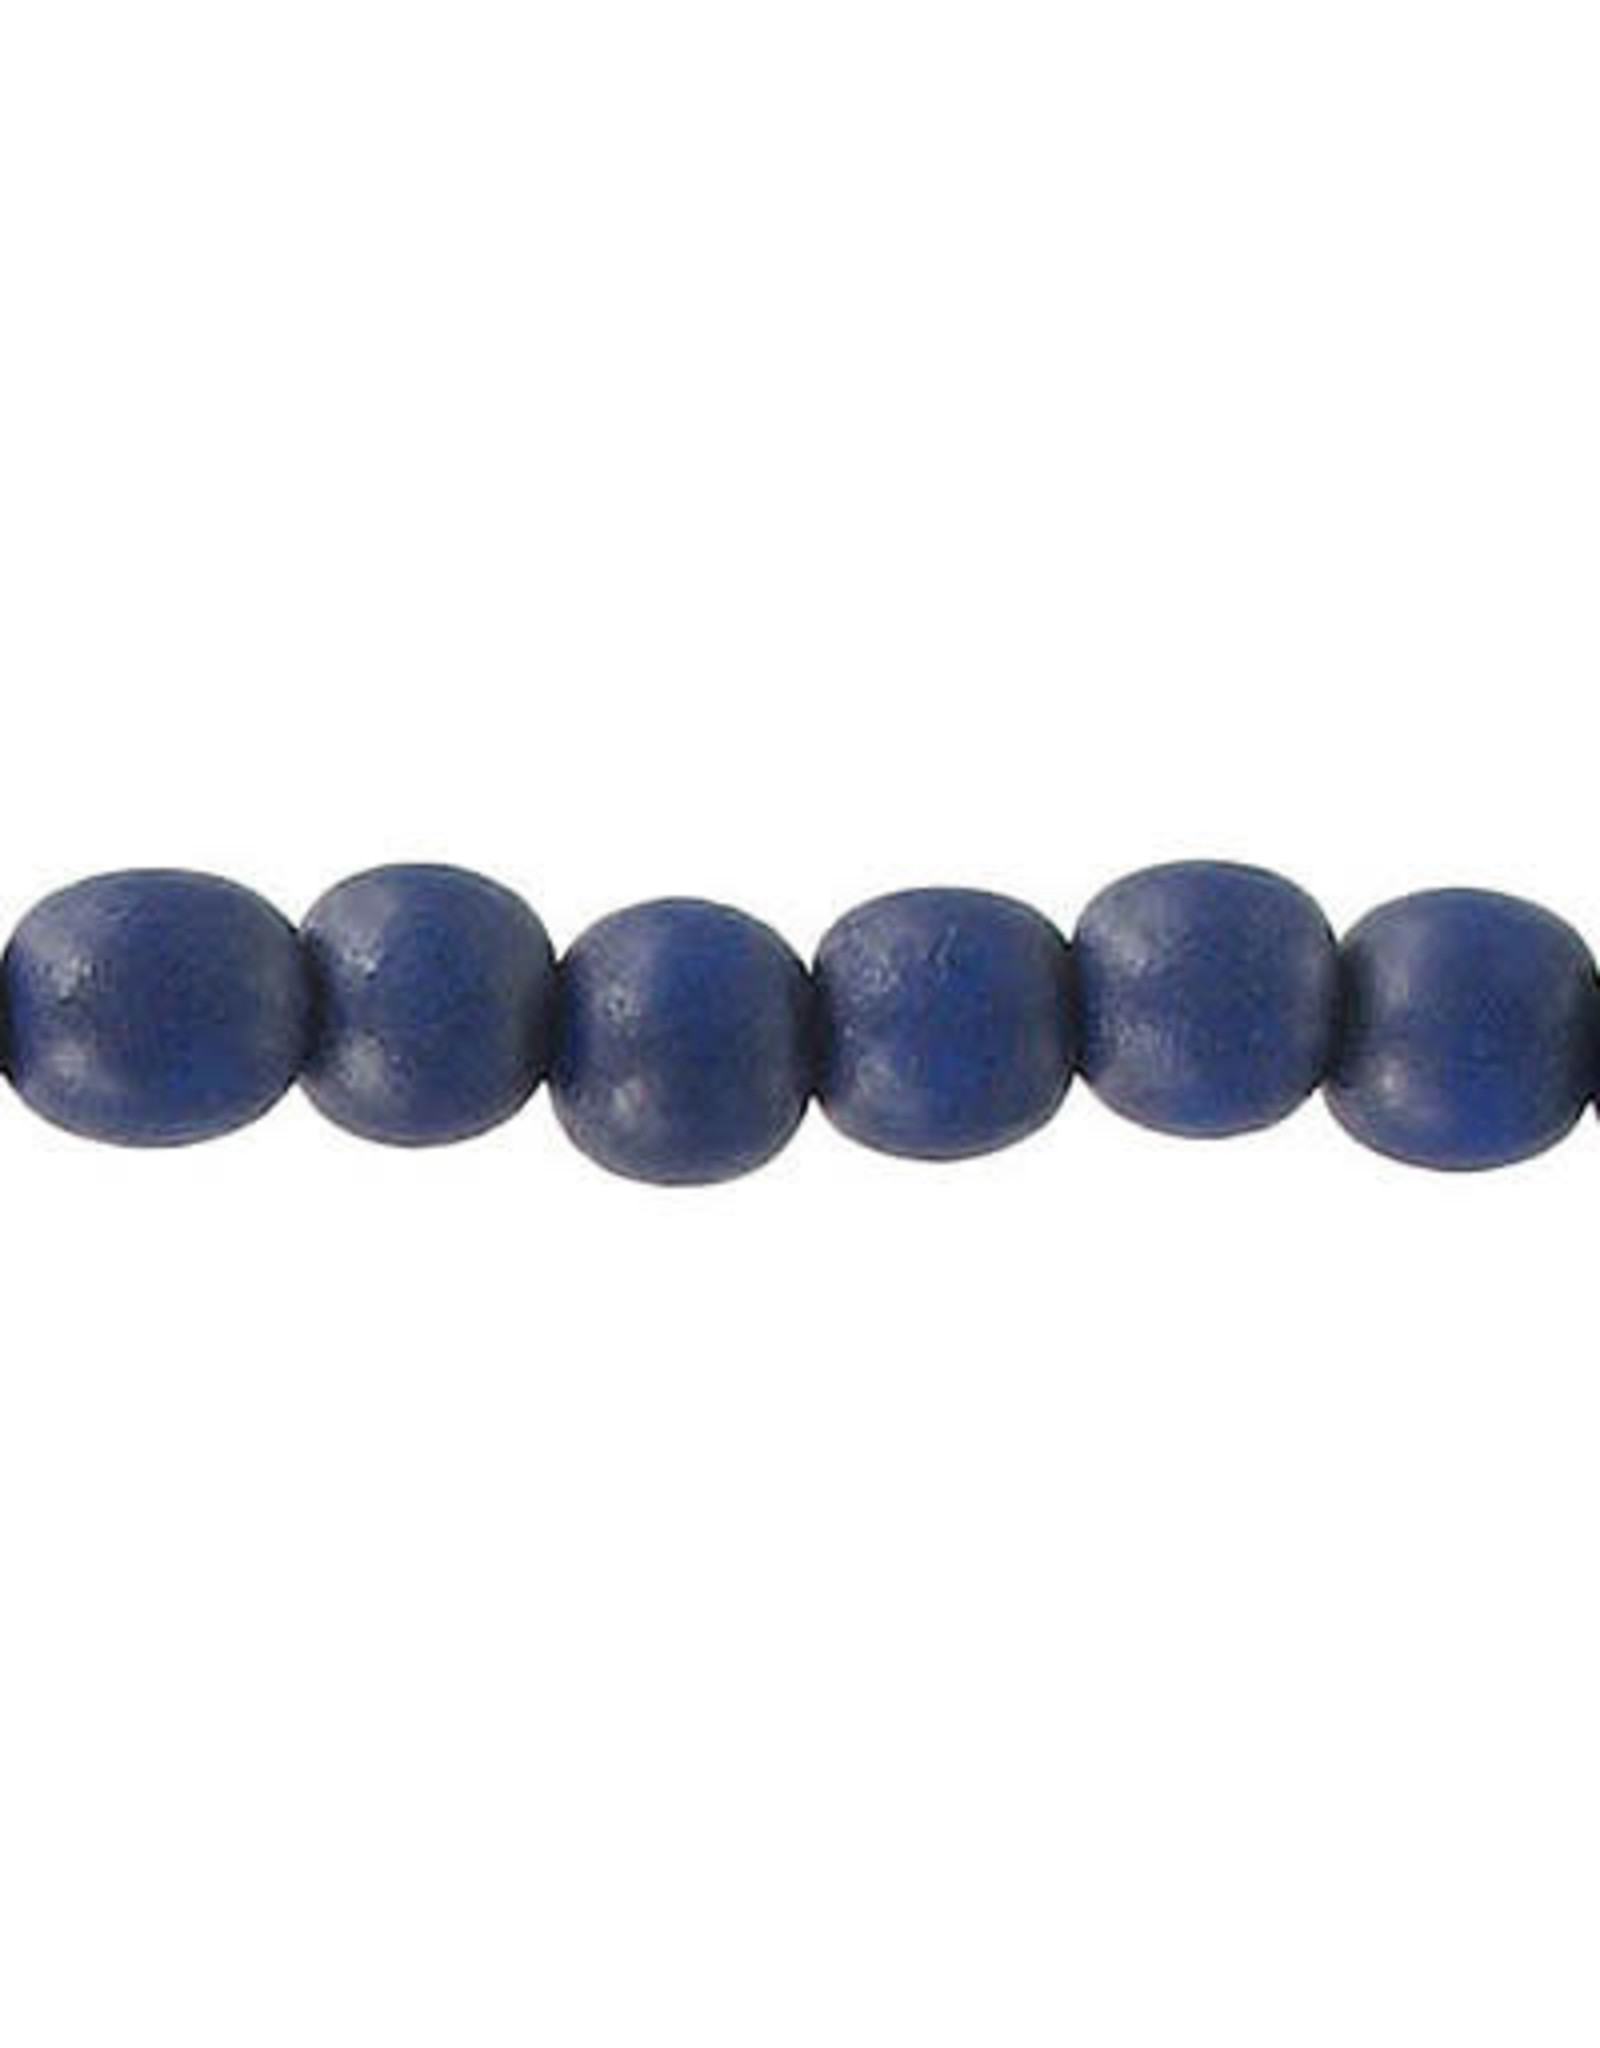 Wood 6mm  Blue 15" Strand  approx  x65 Beads